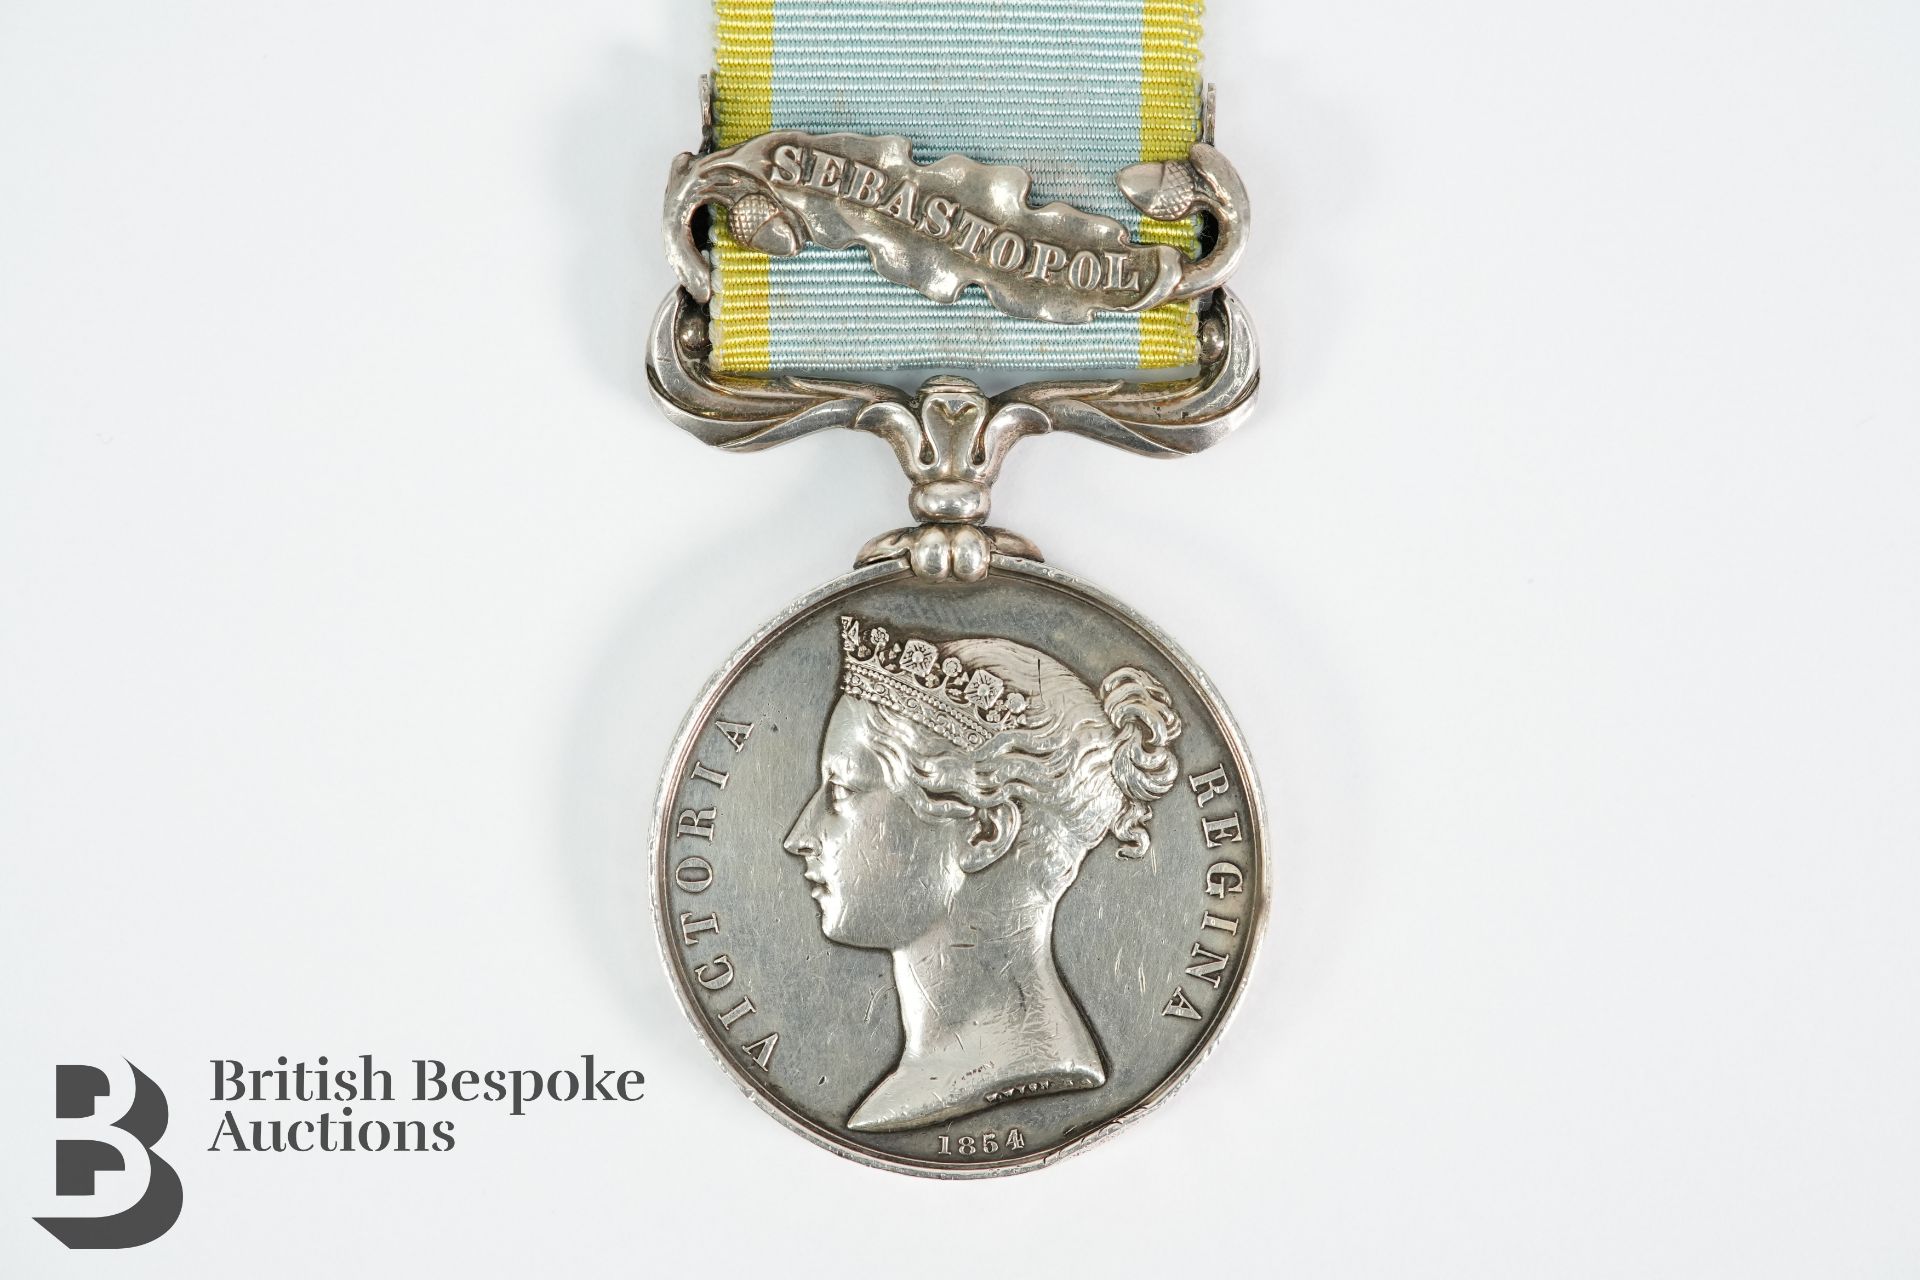 Crimea Campaign Medal - Image 2 of 3